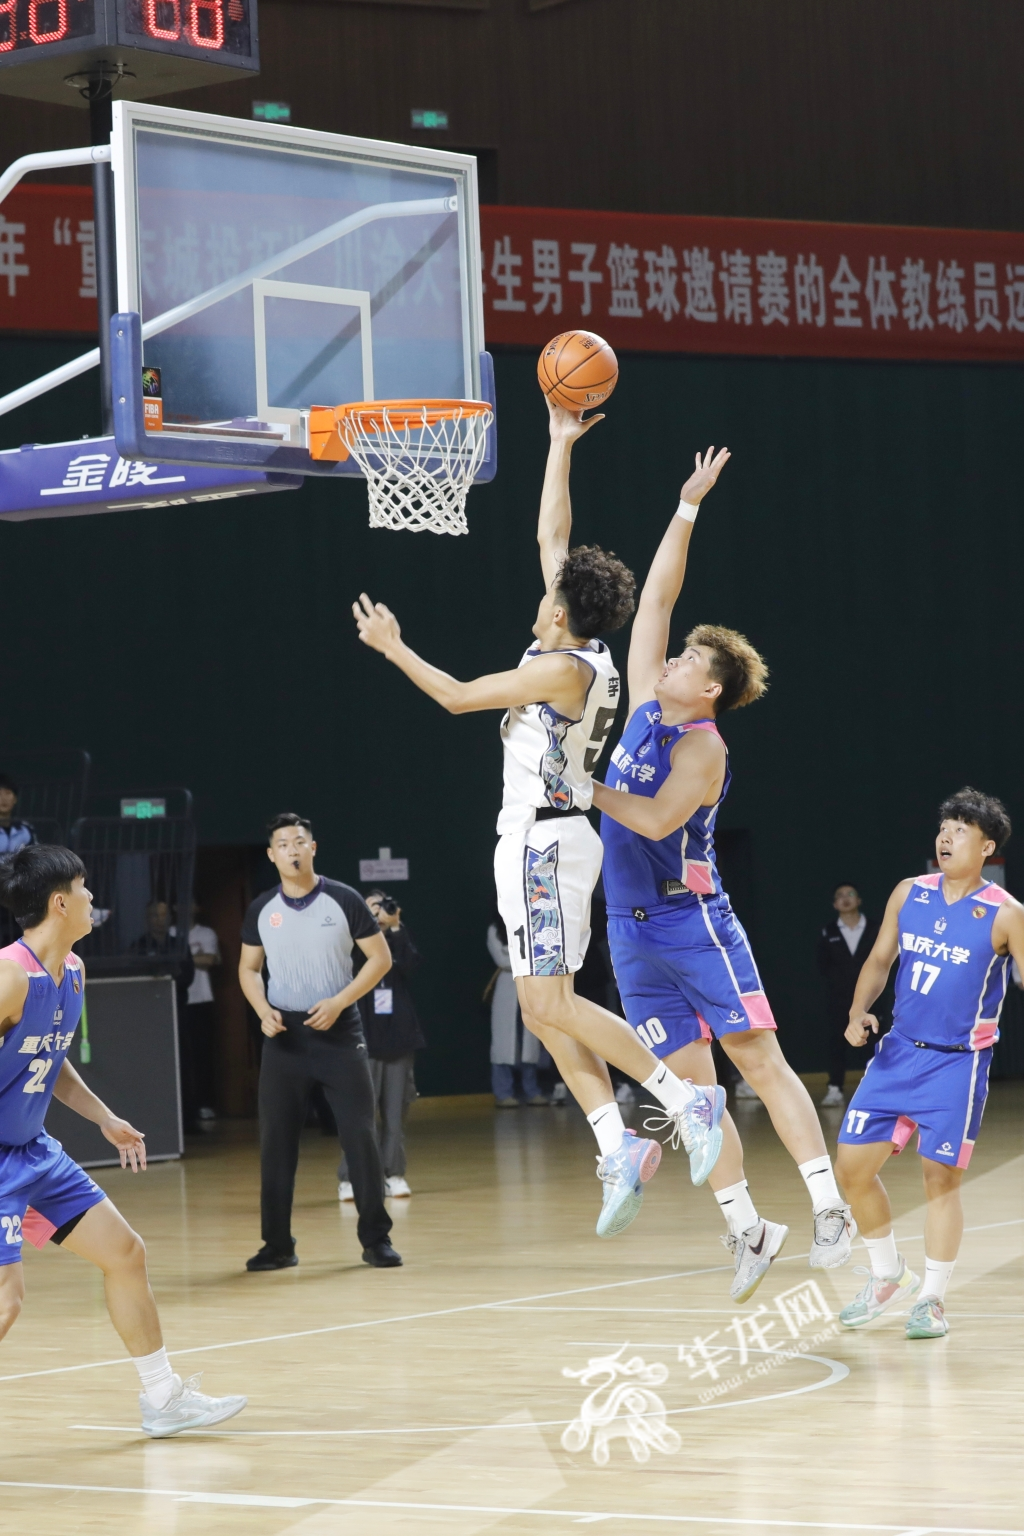 02--8所川渝高校的男子篮球队将同场竞技。华龙网记者 石涛 摄